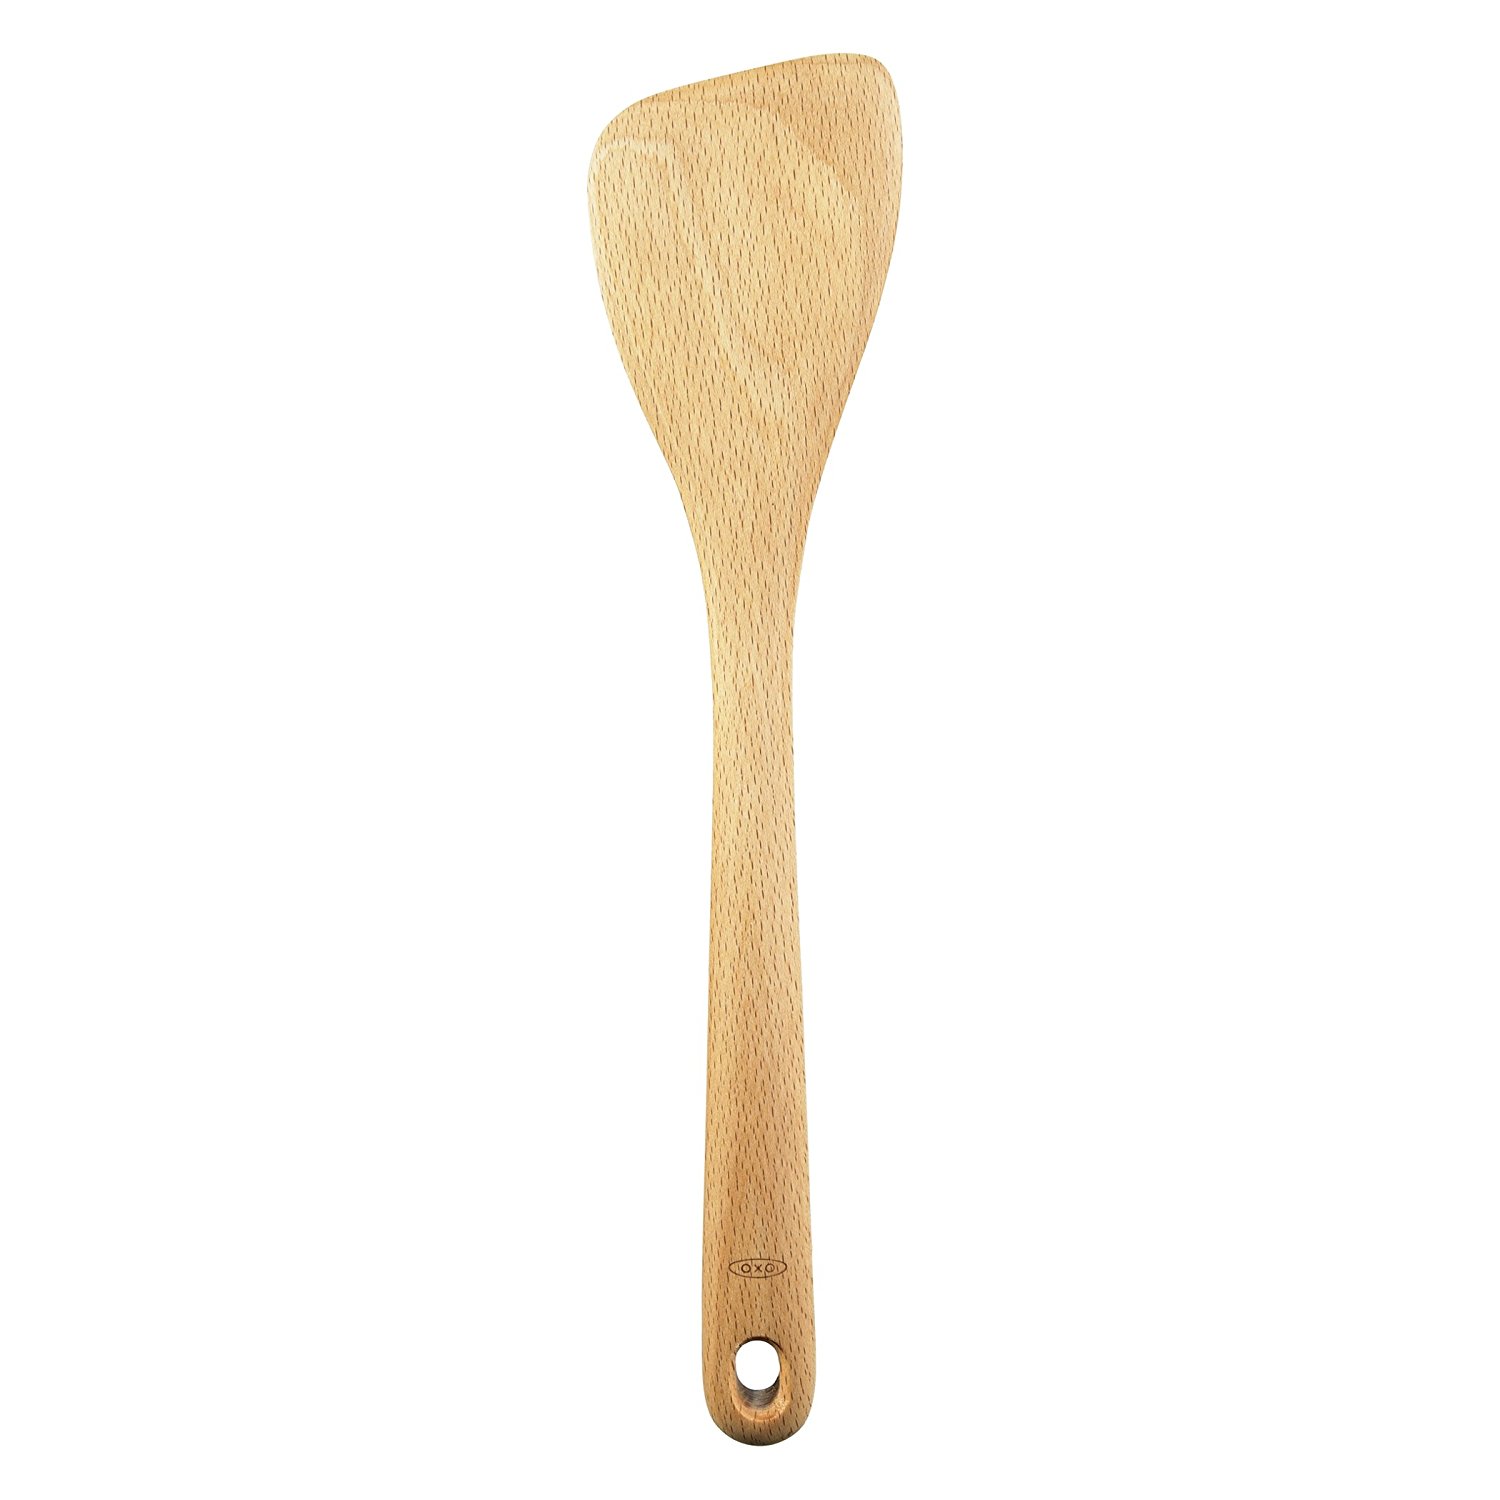 Oxo Wooden Saute Spoon / Spatula